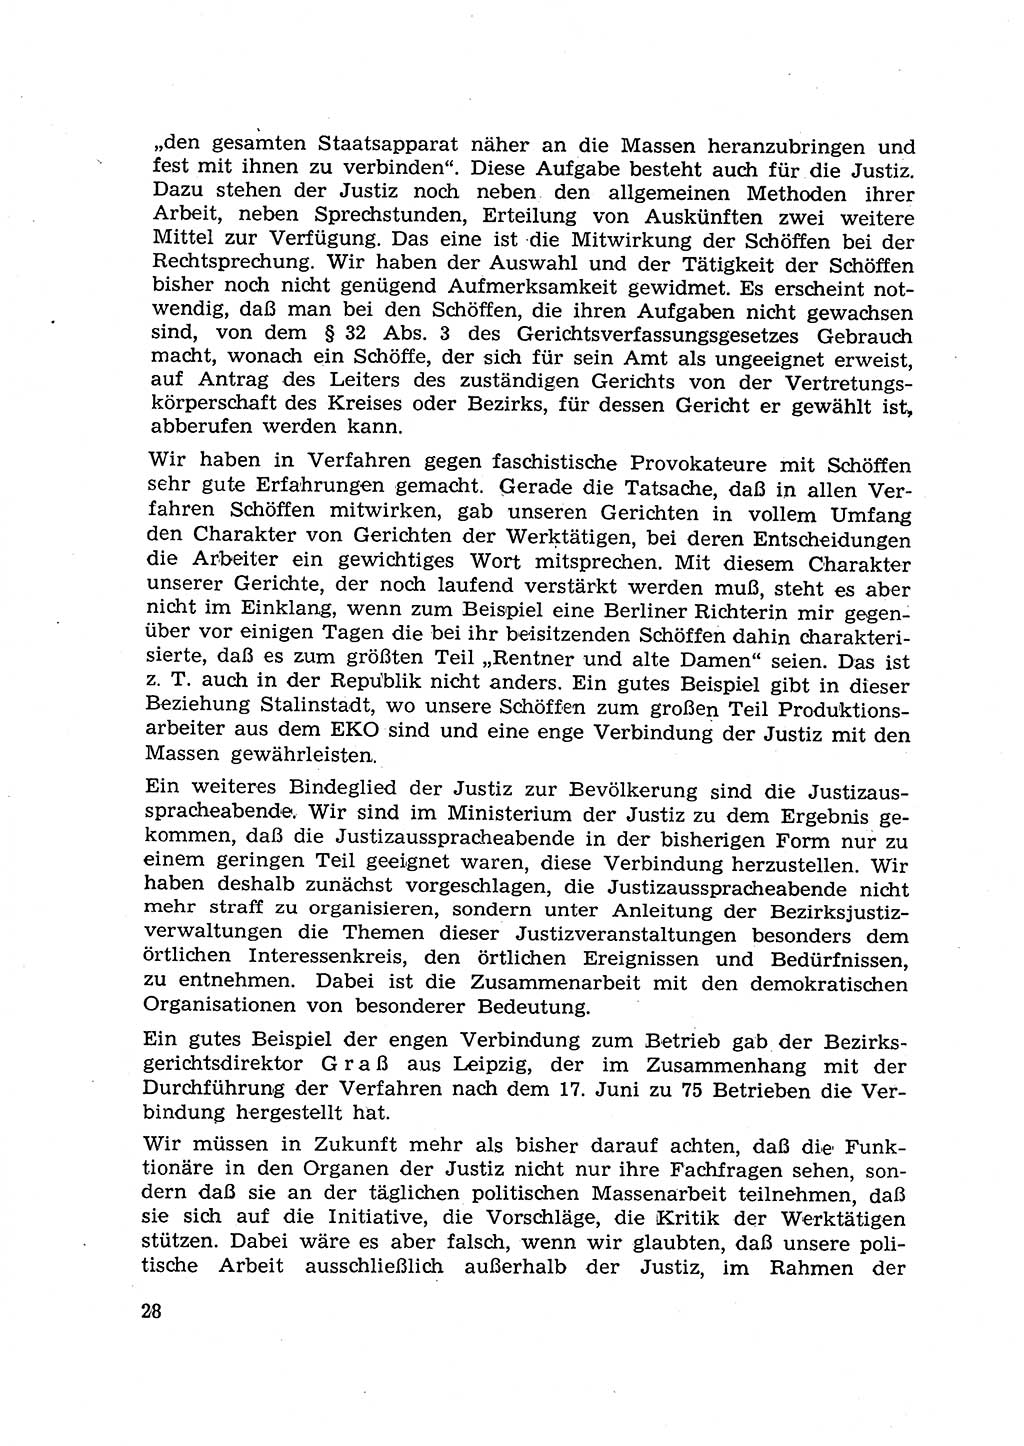 Hauptaufgaben der Justiz [Deutsche Demokratische Republik (DDR)] bei der Durchführung des neuen Kurses 1953, Seite 28 (Hpt.-Aufg. J. DDR 1953, S. 28)